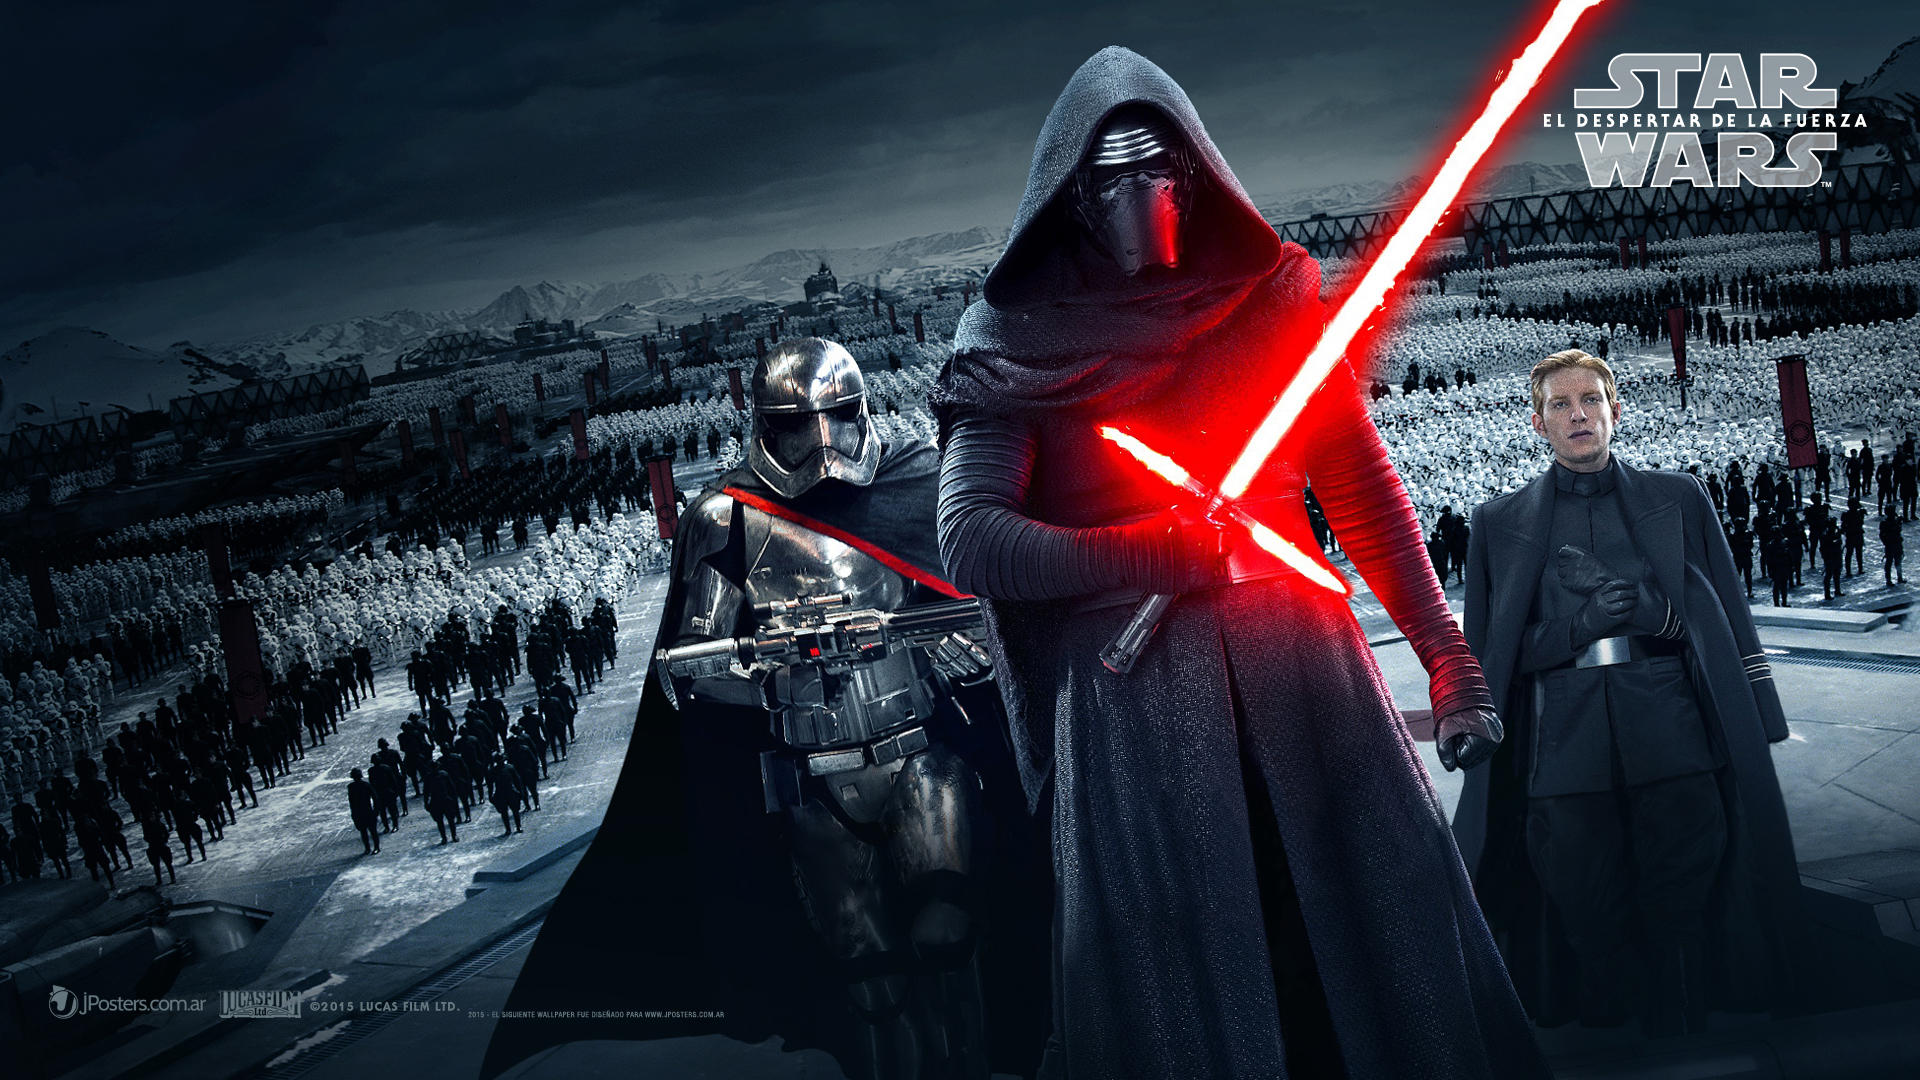 Star Wars The Force Awakens Endlich ist der neue Trailer da